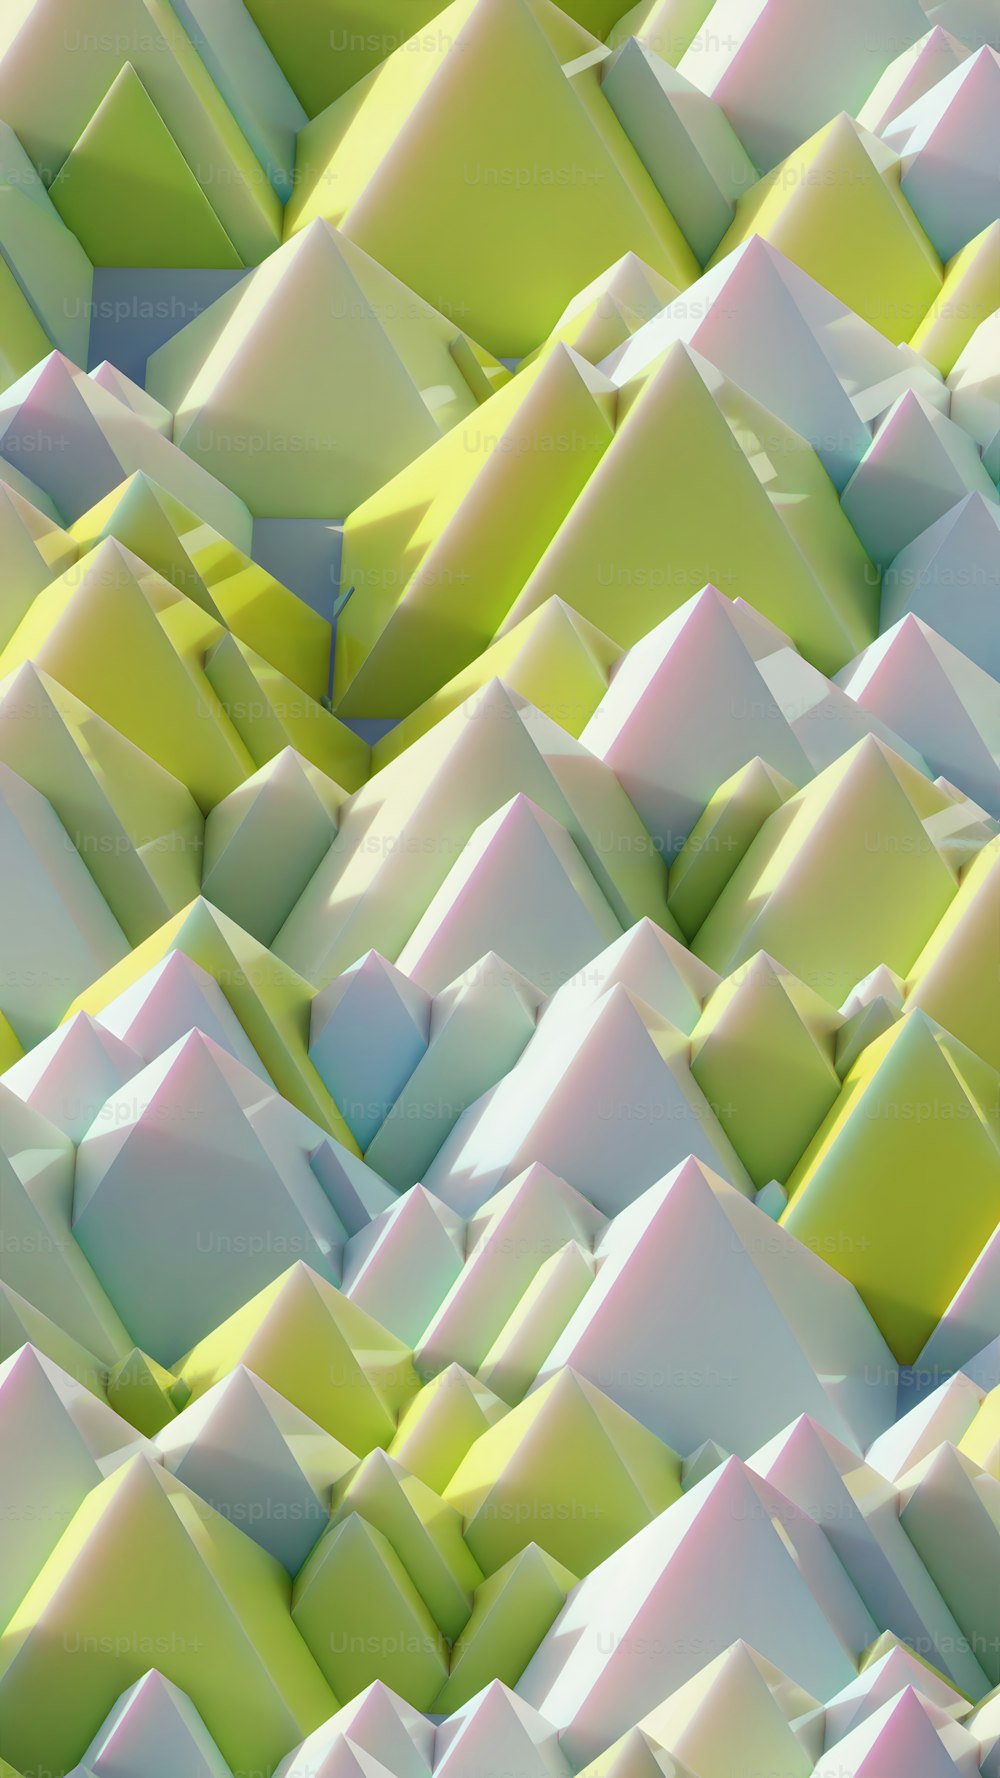 Un fondo abstracto muy colorido con muchos bloques